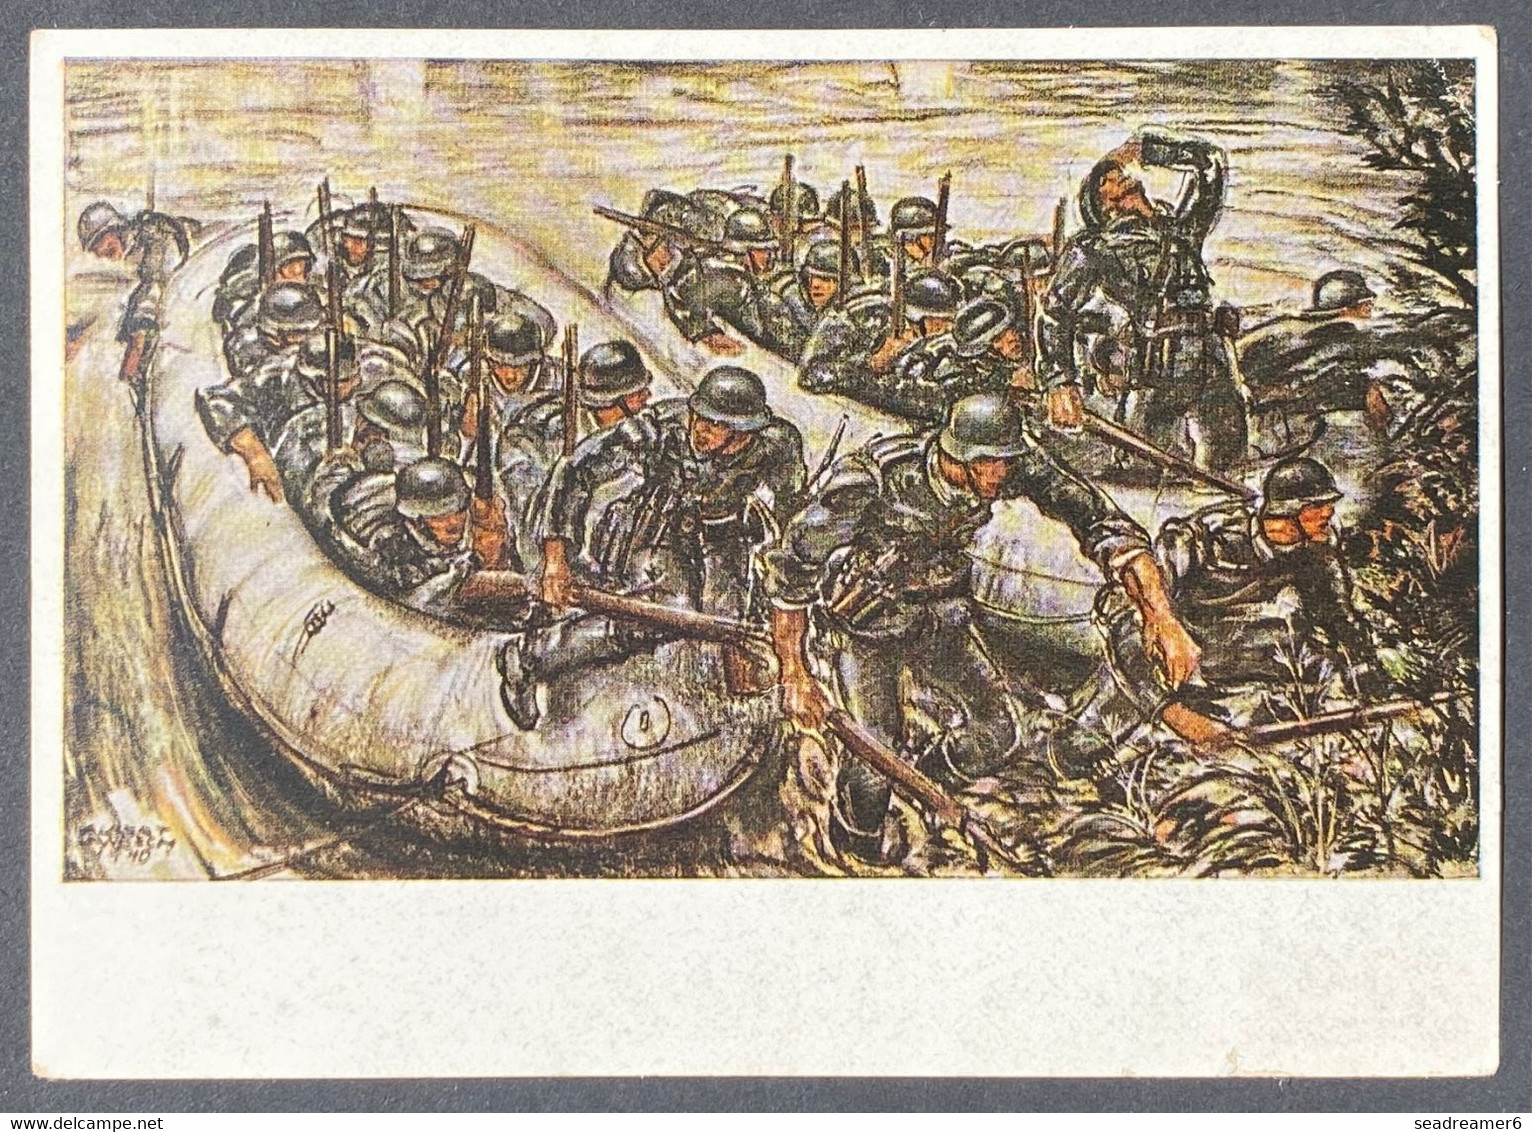 Carte Postale N°566 Pour La Legion Tricolore Par Avion Oblitéré Cachet Allemand Feldpost Pour Hambourg Rare !! - Guerre (timbres De)